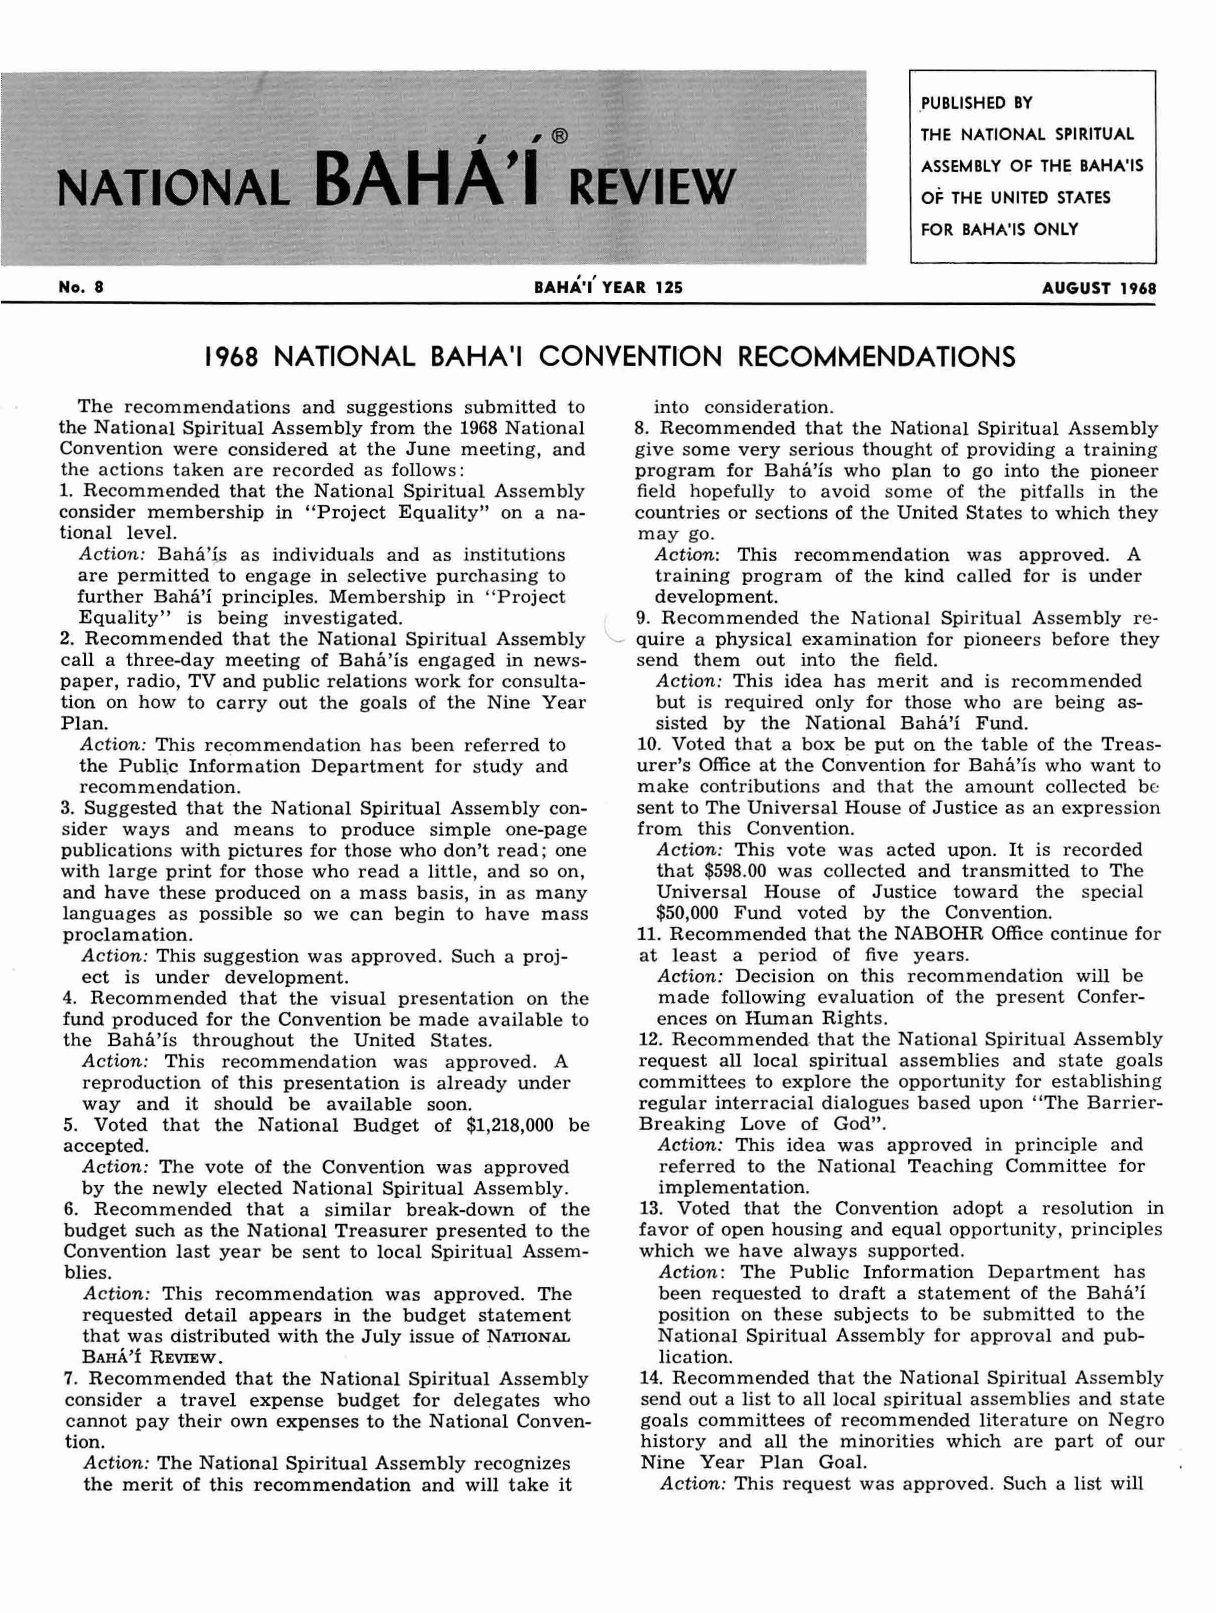 Concerning the Author of "The Prophet", National Bahá'í Review, No. 6, Bahá'í Year 125, August 1968, p. 3.